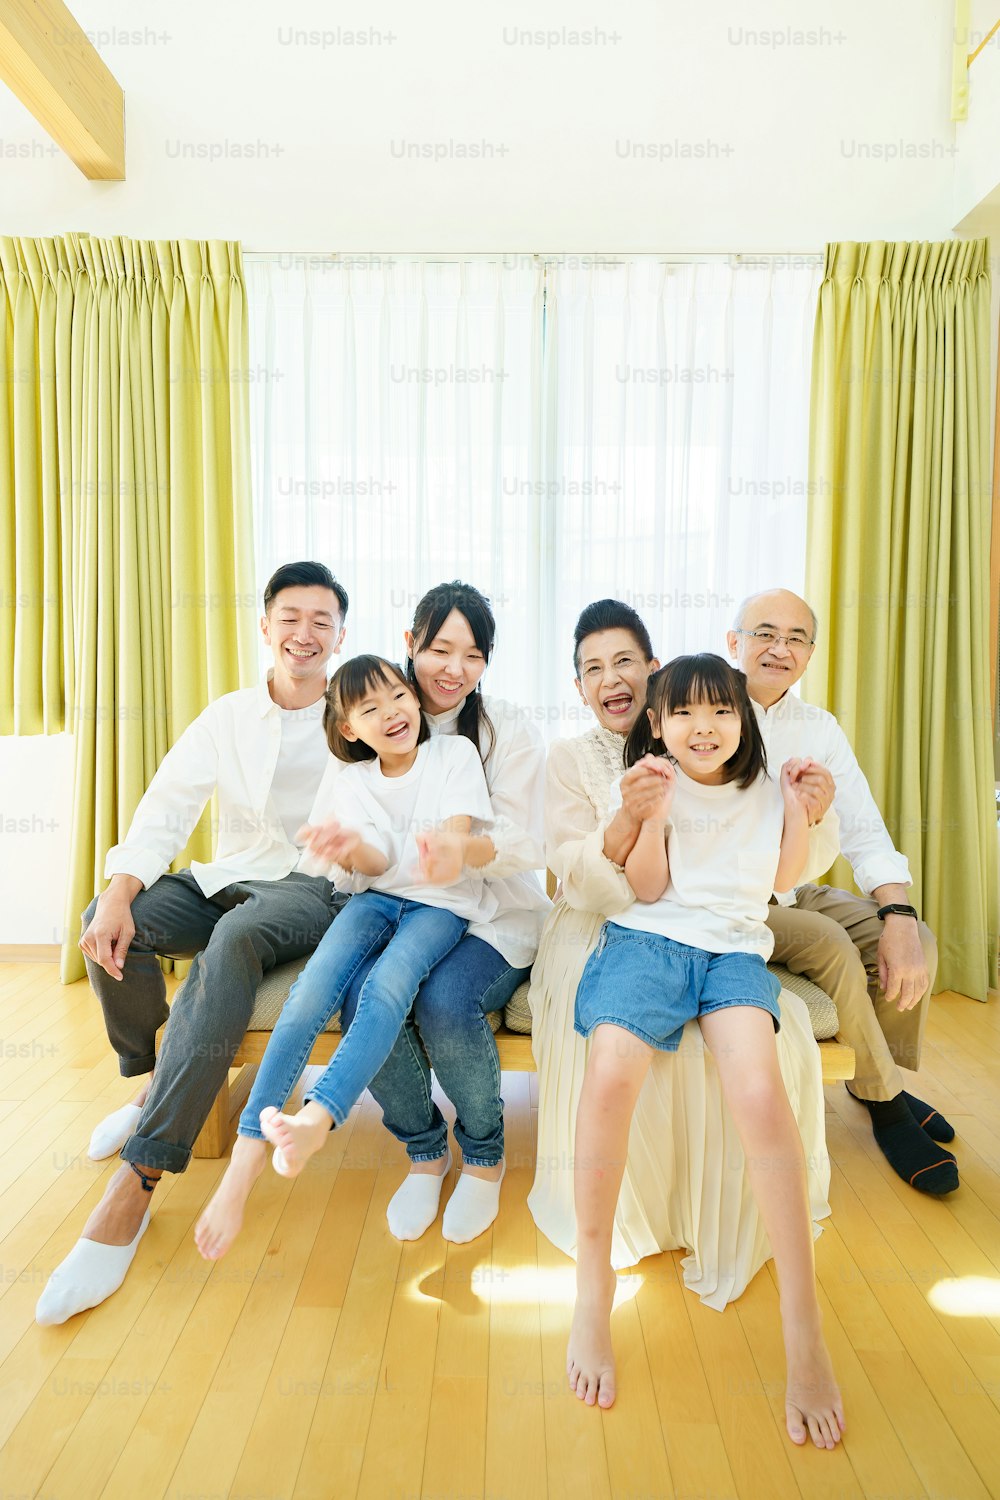 Gruppenfoto der 3. Generation Familie im Zimmer